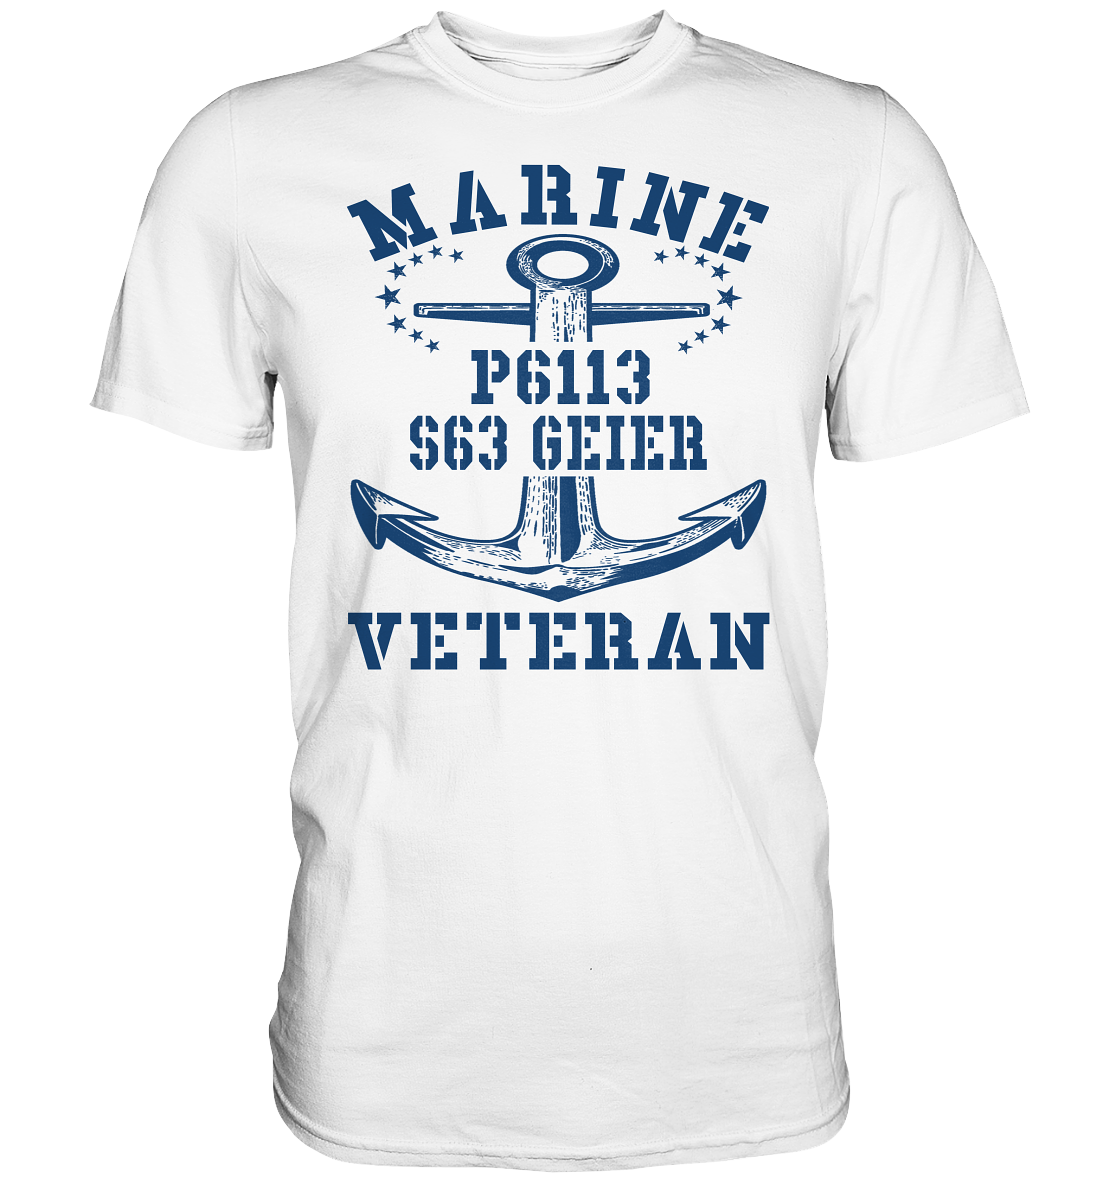 FK-Schnellboot P6113 GEIER Marine Veteran - Premium Shirt